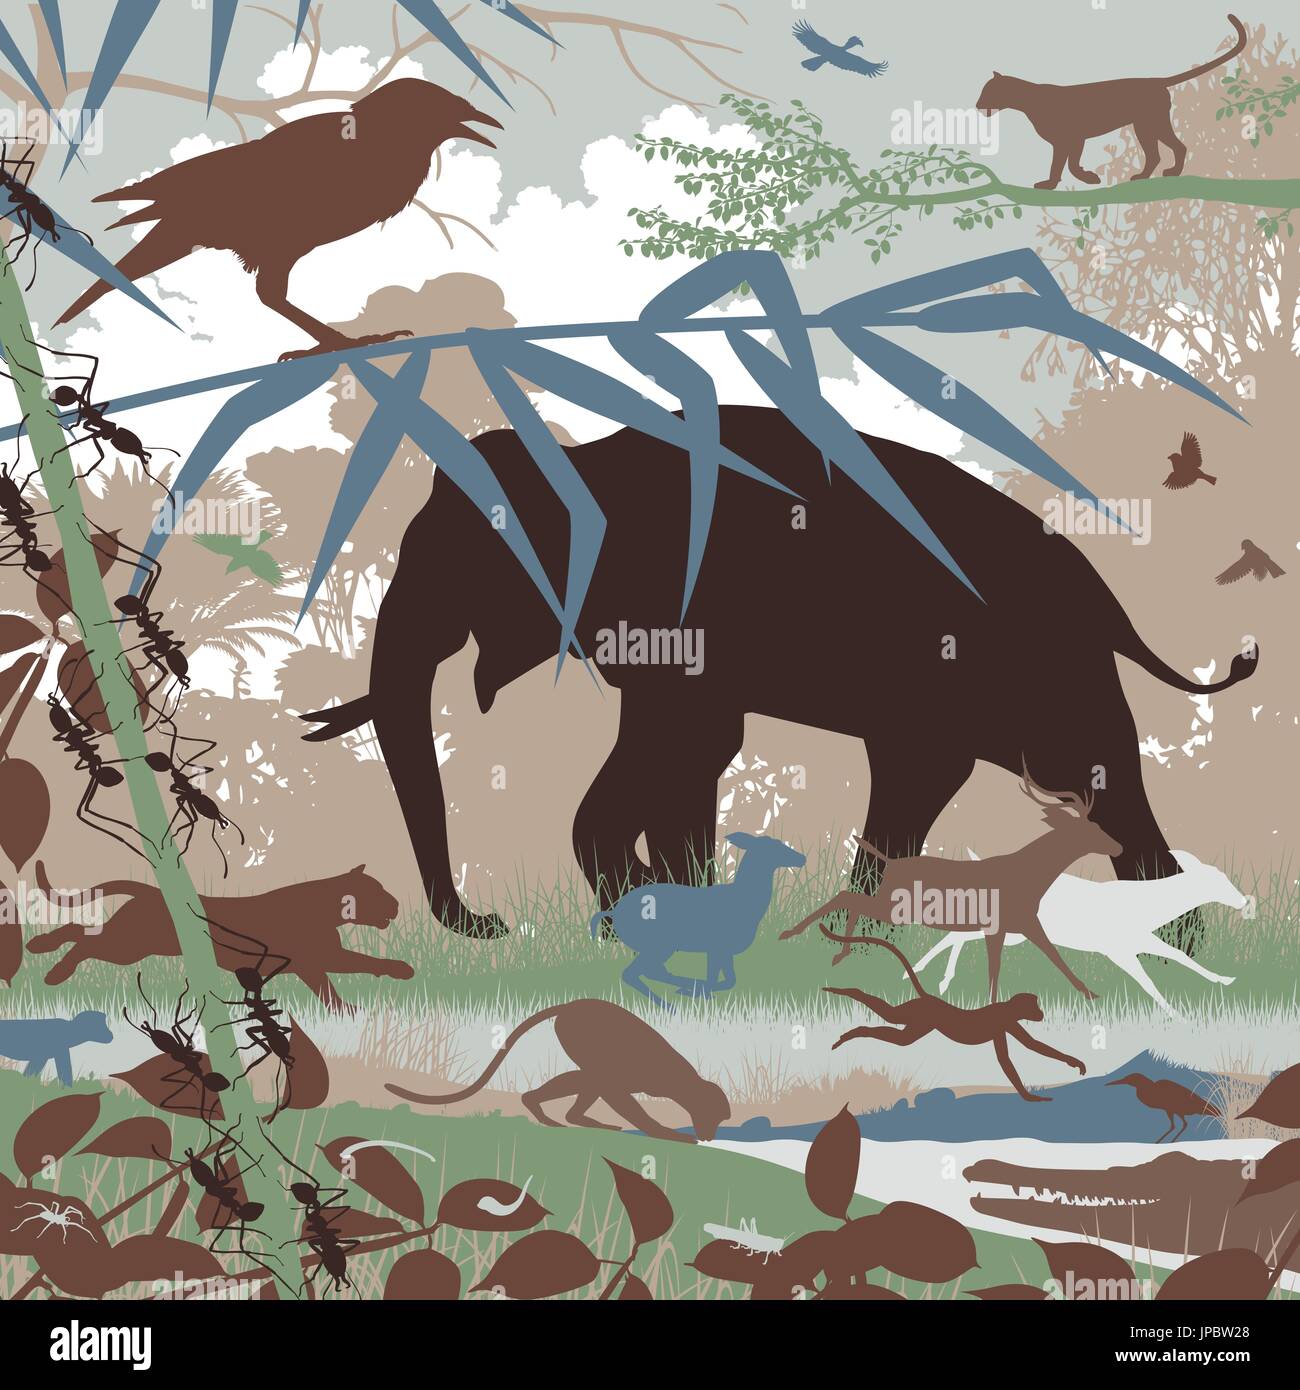 Bearbeitbares Vektor-Illustration der asiatischen Tierwelt im natürlichen Lebensraum Stock Vektor